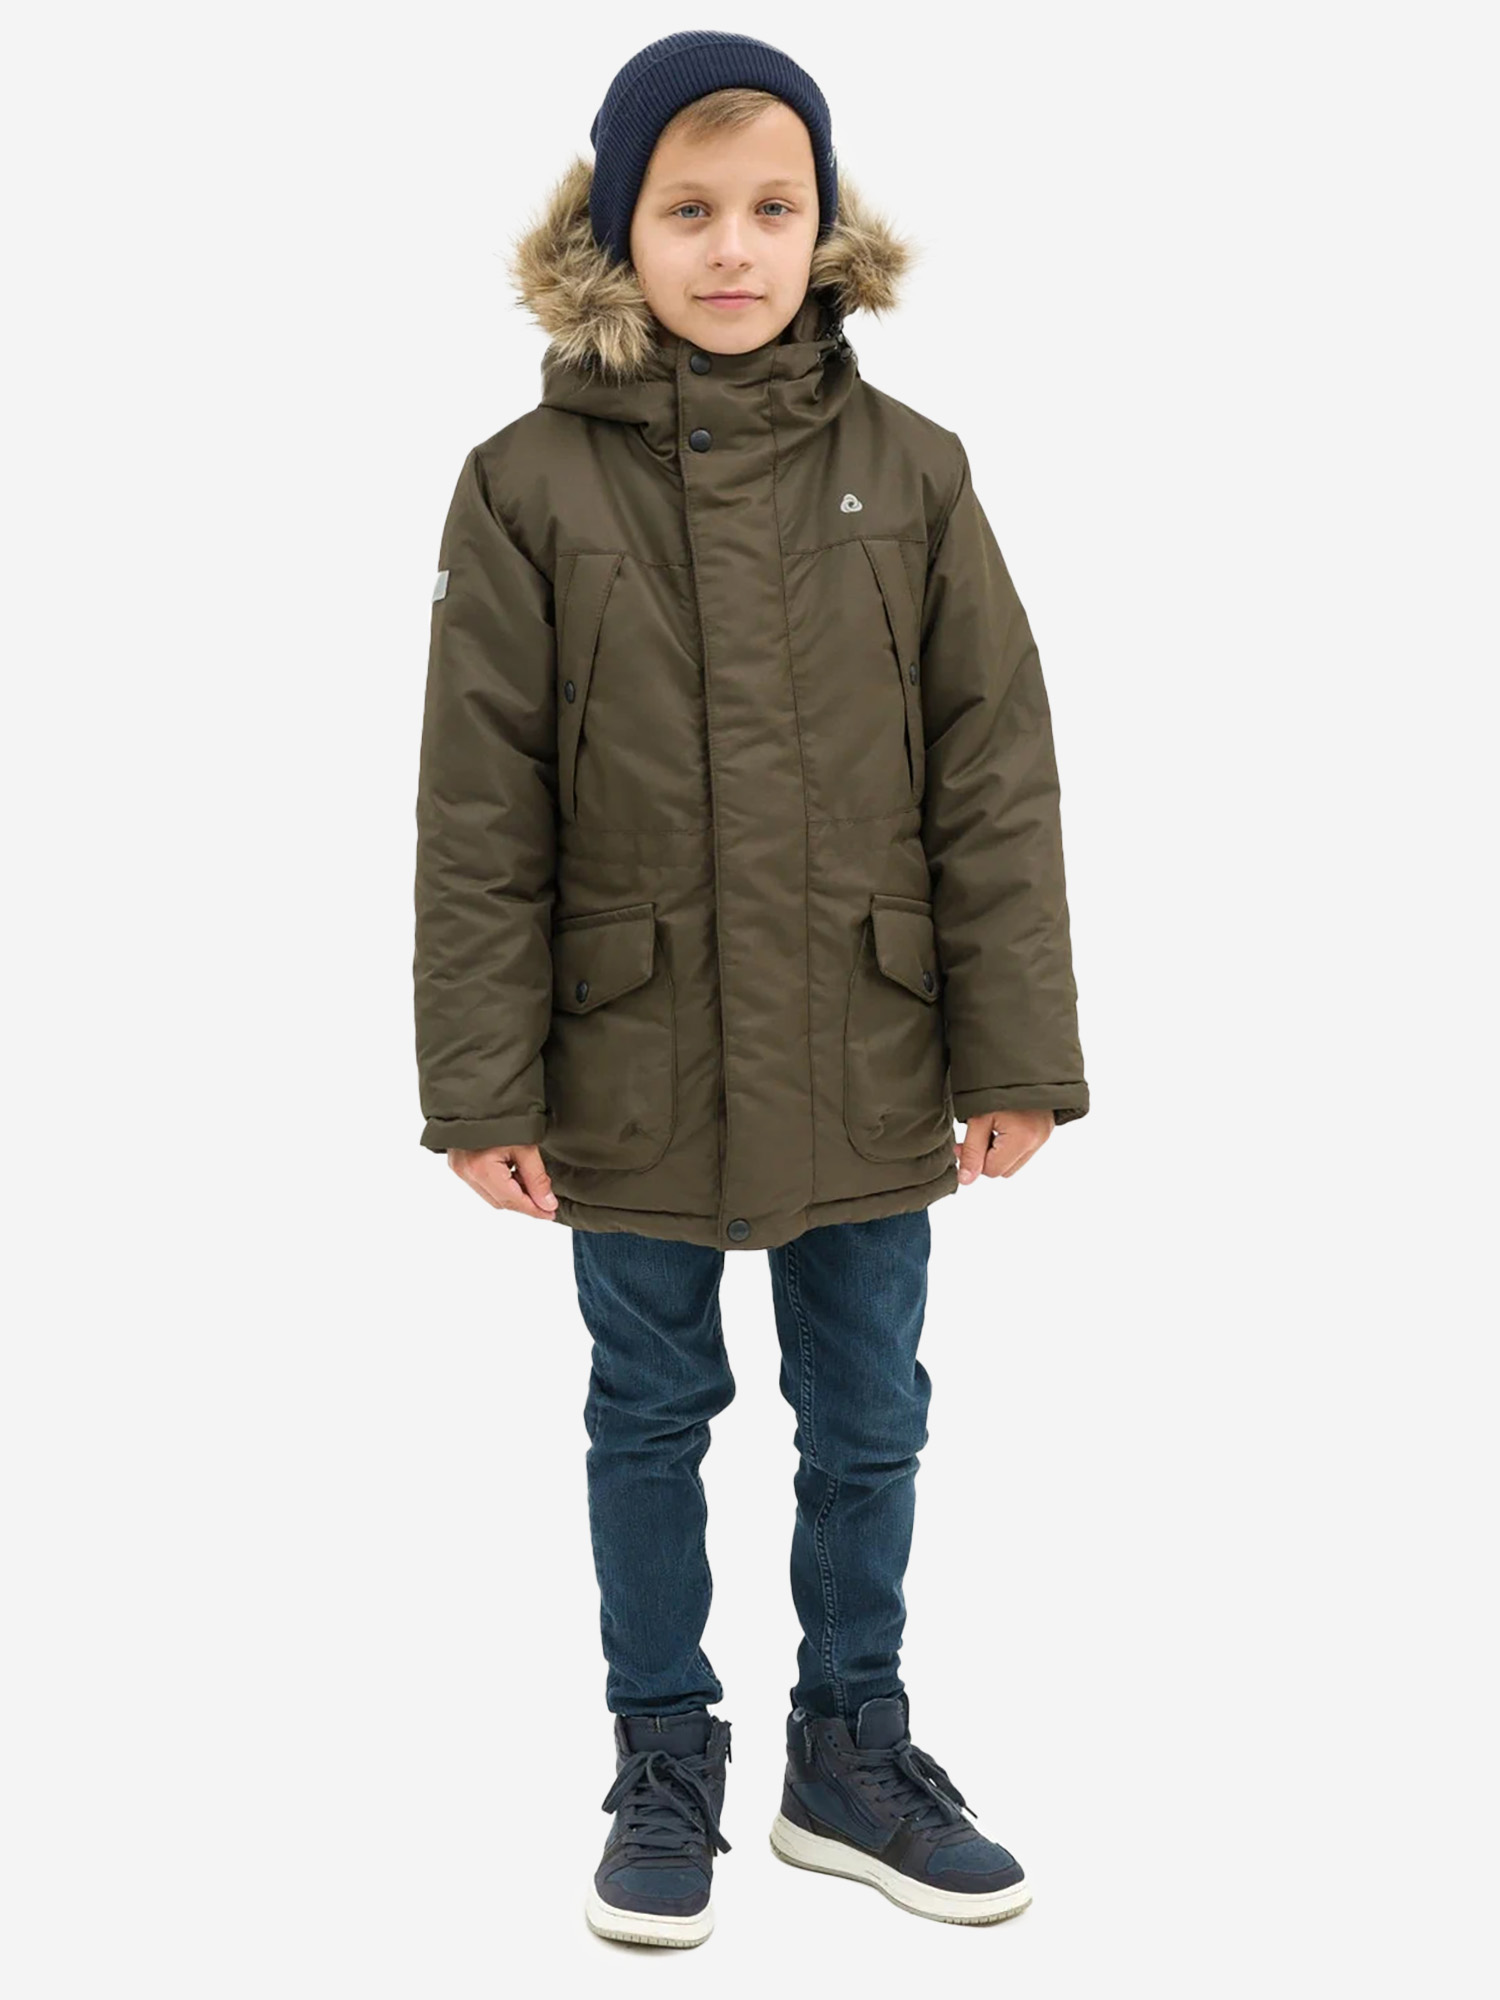 Куртка детская зимняя CosmoTex, Зеленый valianly парка зимняя подростковая для мальчика 9343